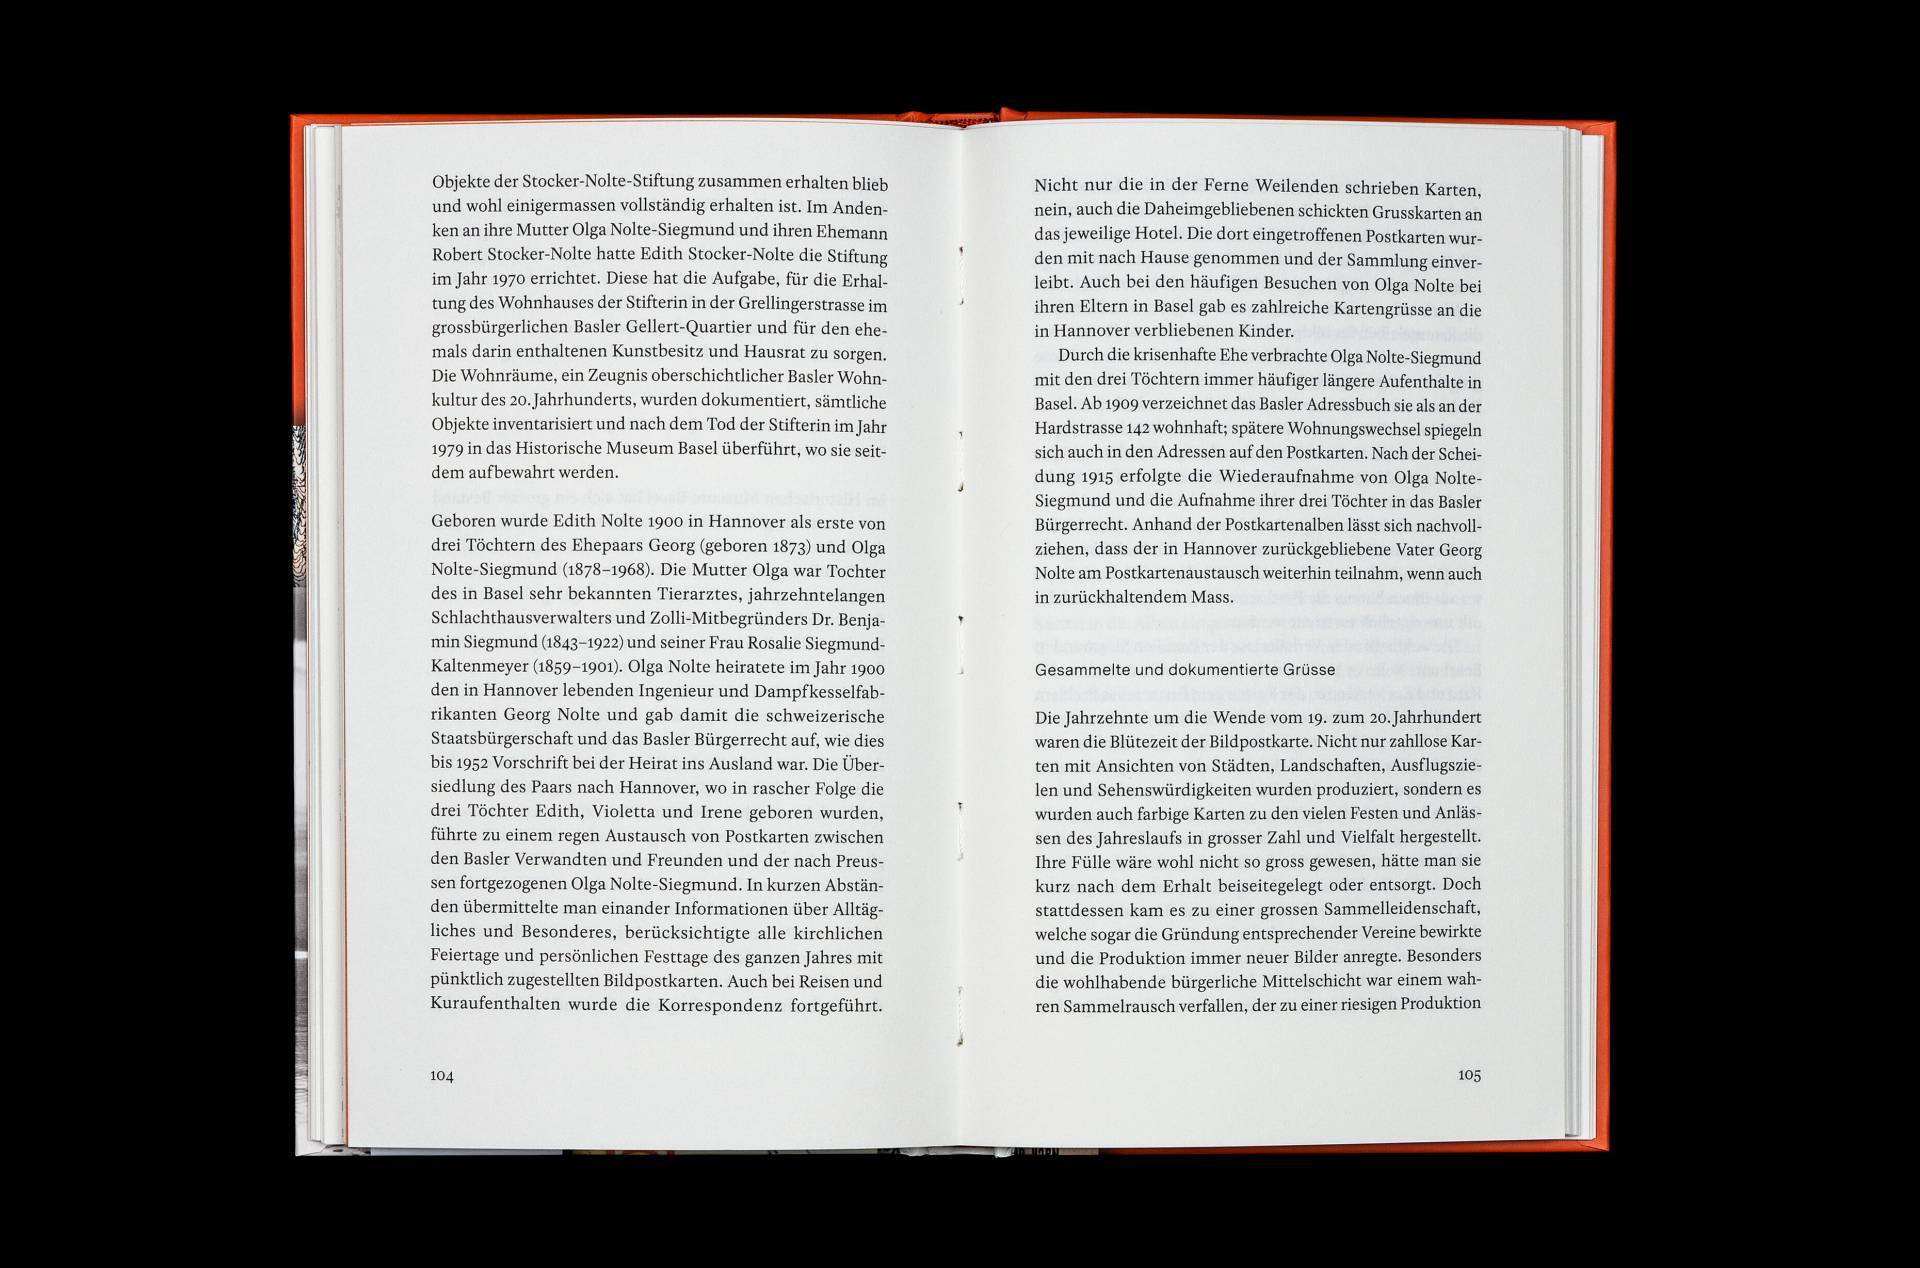 Publikation »Kartenland Schweiz« für den Zytglogge Verlag, Basel